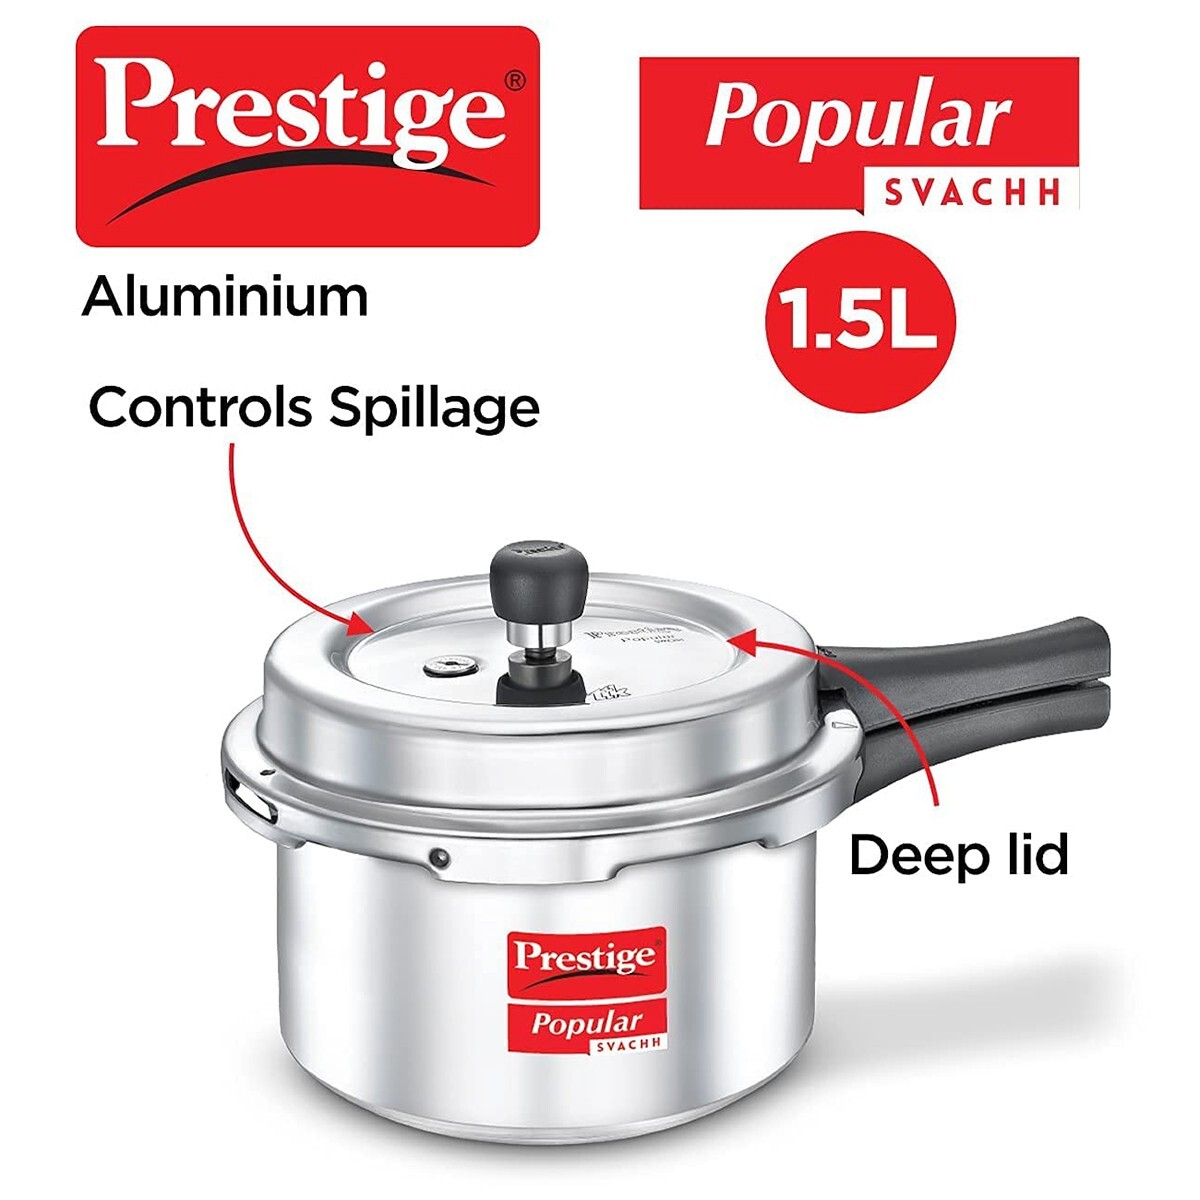 Prestige Popular Plus Aluminium Svachh Outer Lid Pressure Cooker 1.5L